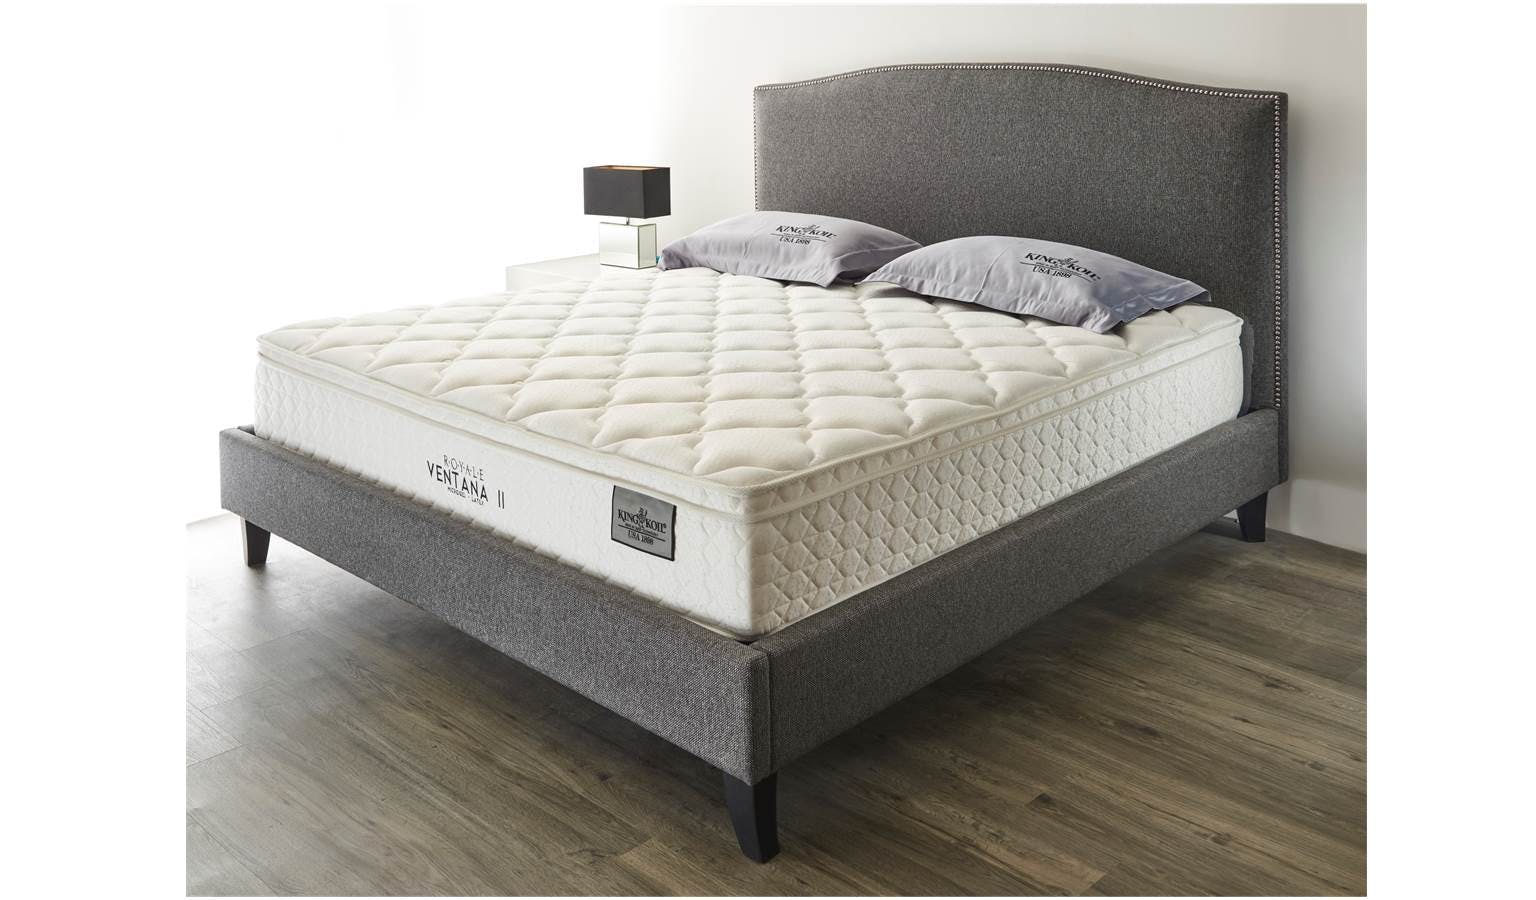 king koil queen mattress for platform beds